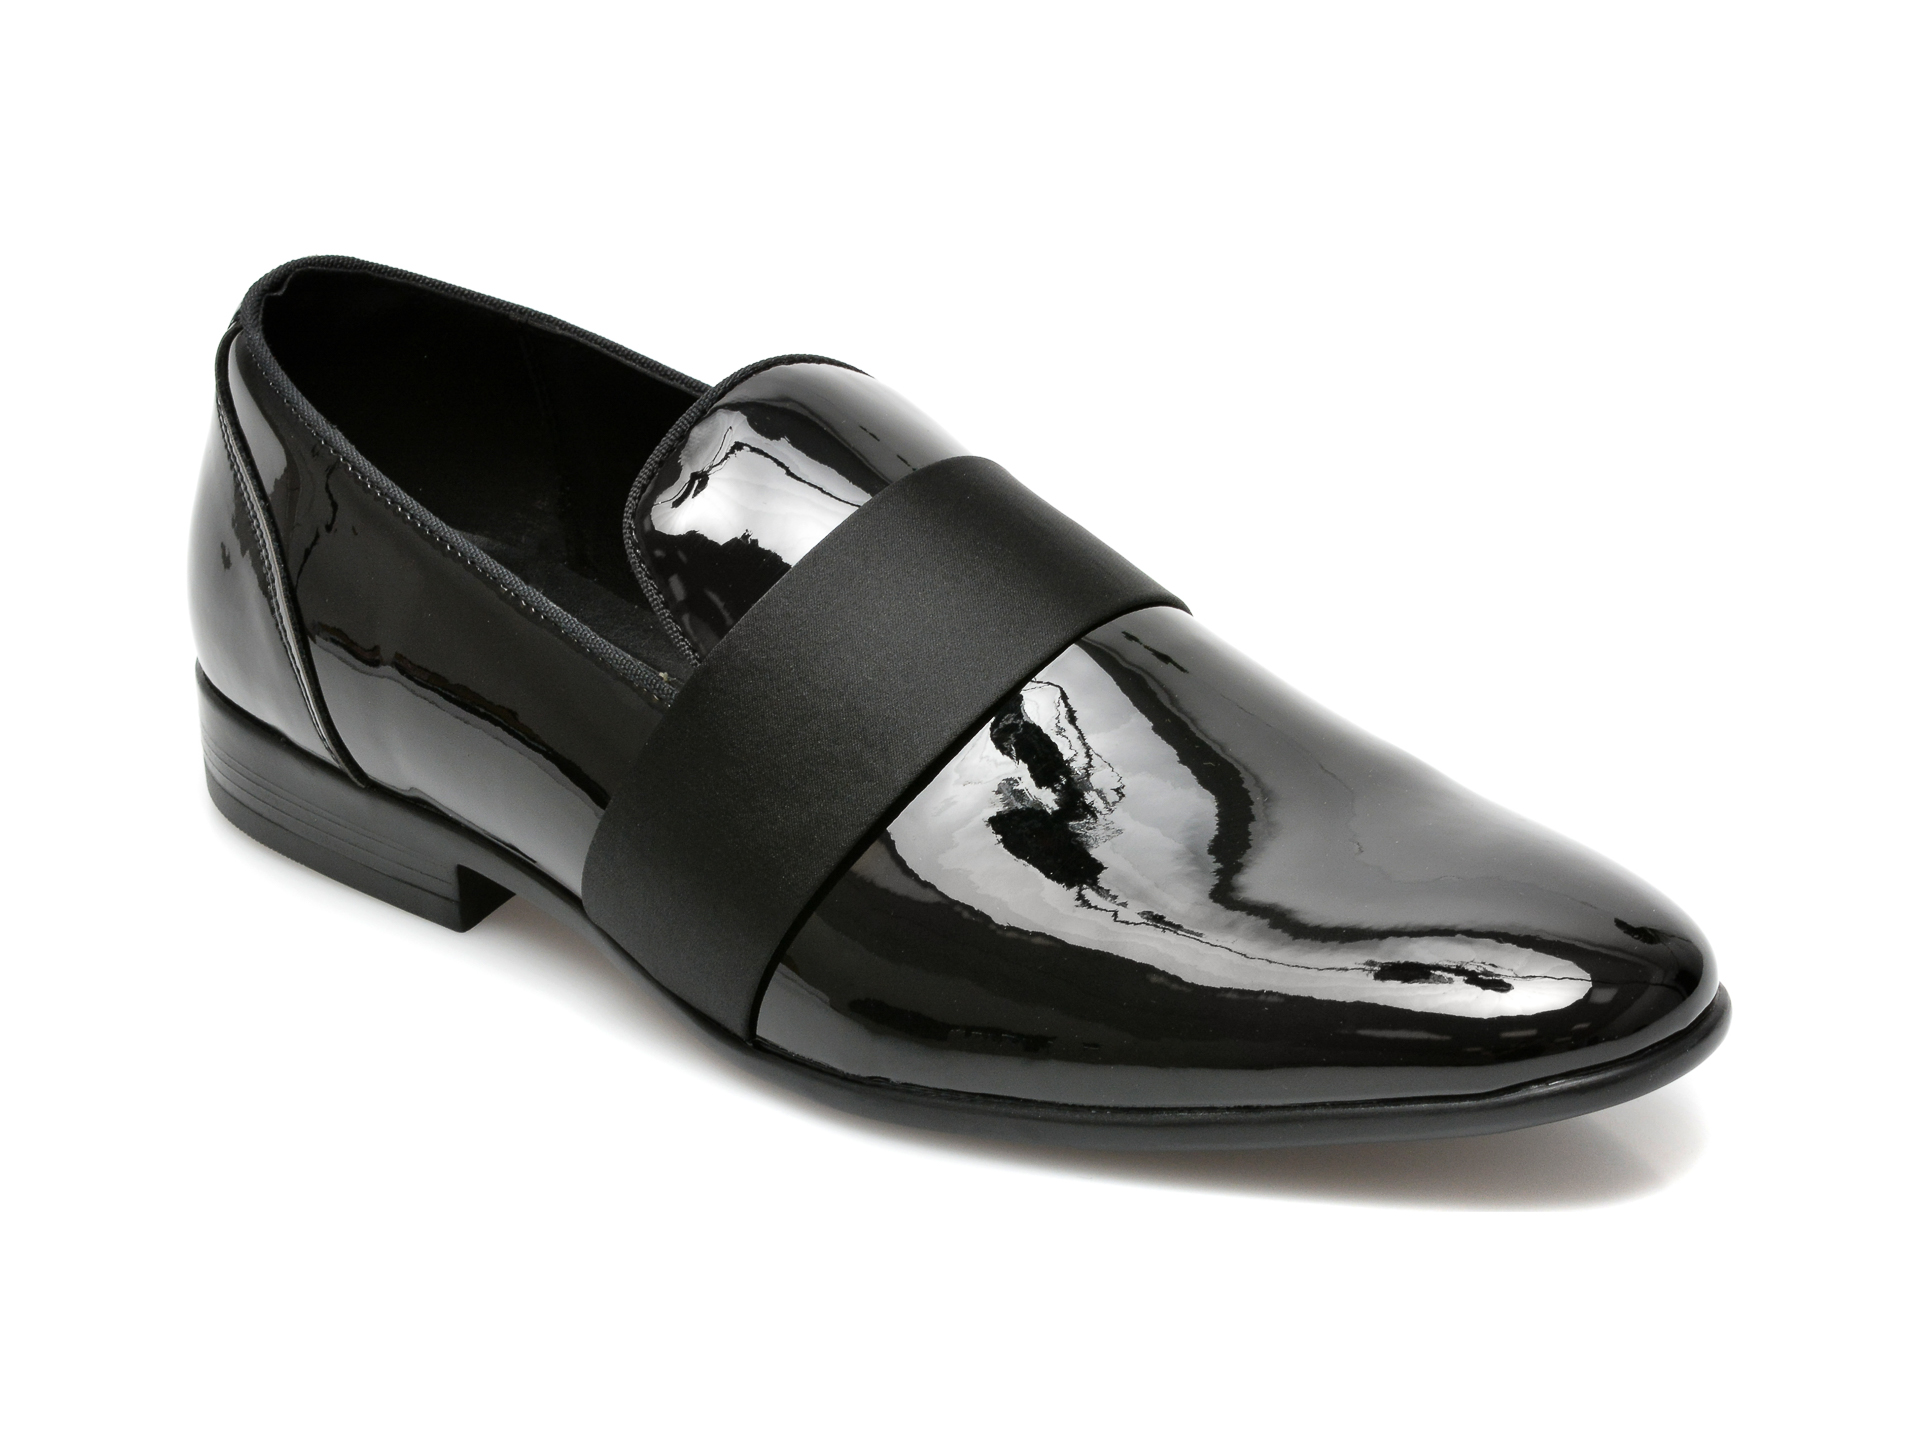 Pantofi ALDO negri, Asaria004, din piele ecologica Aldo Aldo